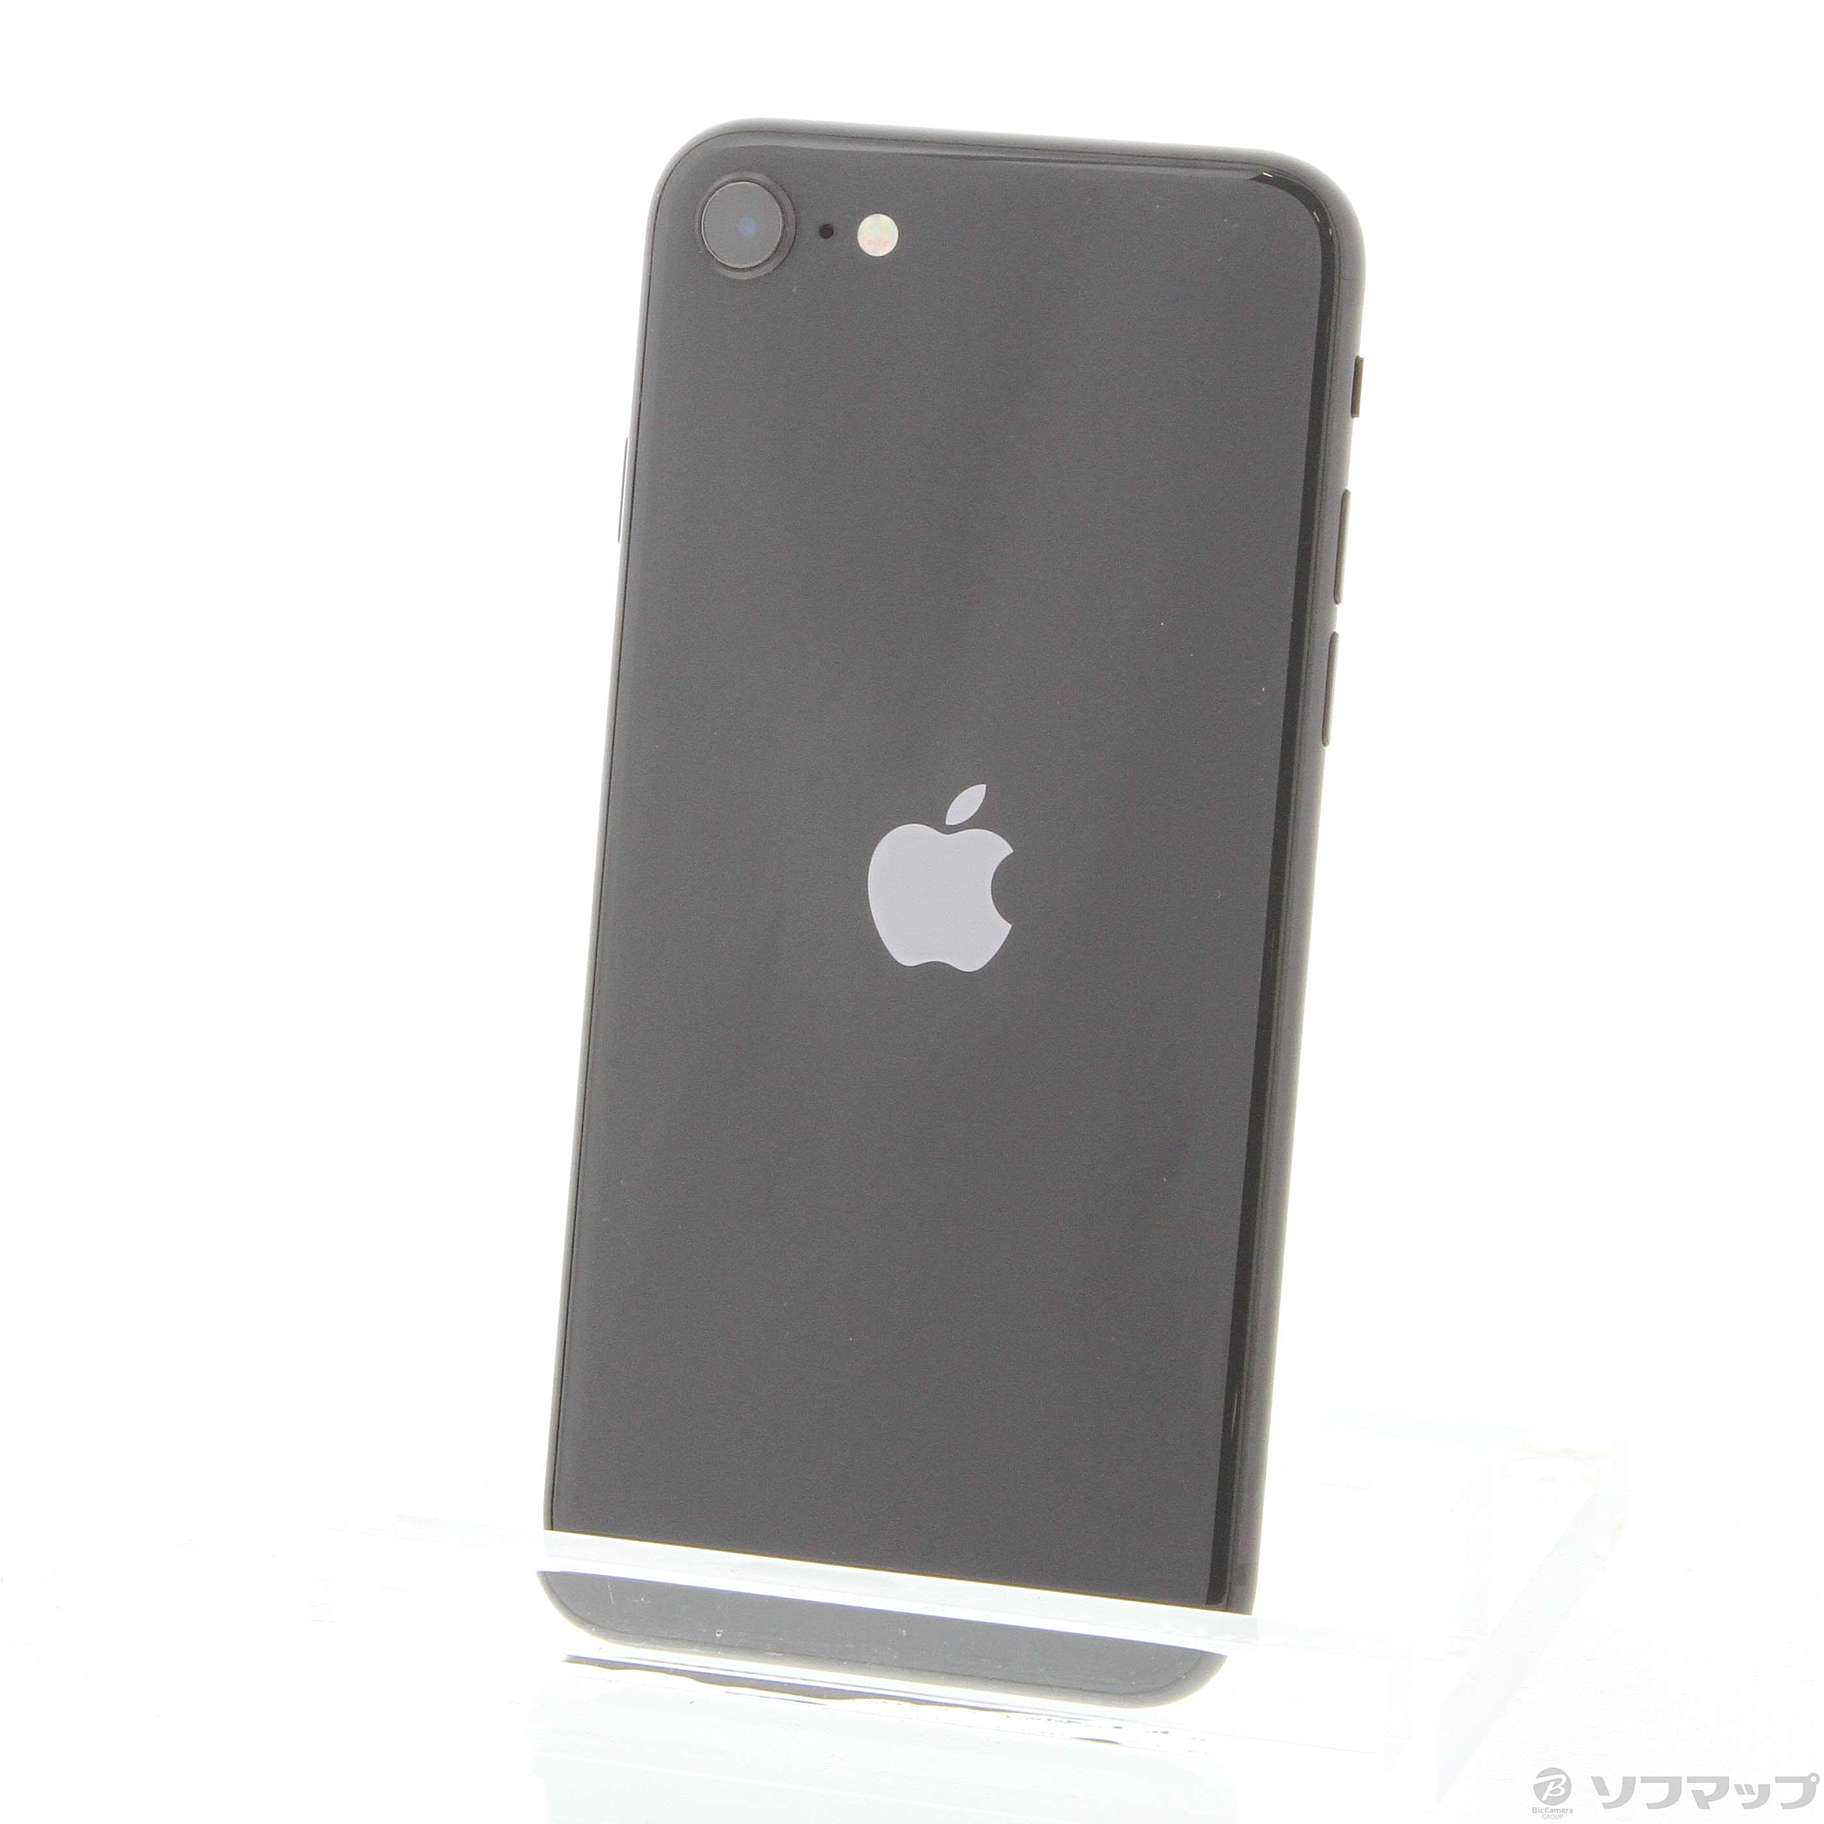 iPhone SE 第2世代 (SE2) ブラック 128 GB SIMフリー - スマートフォン本体